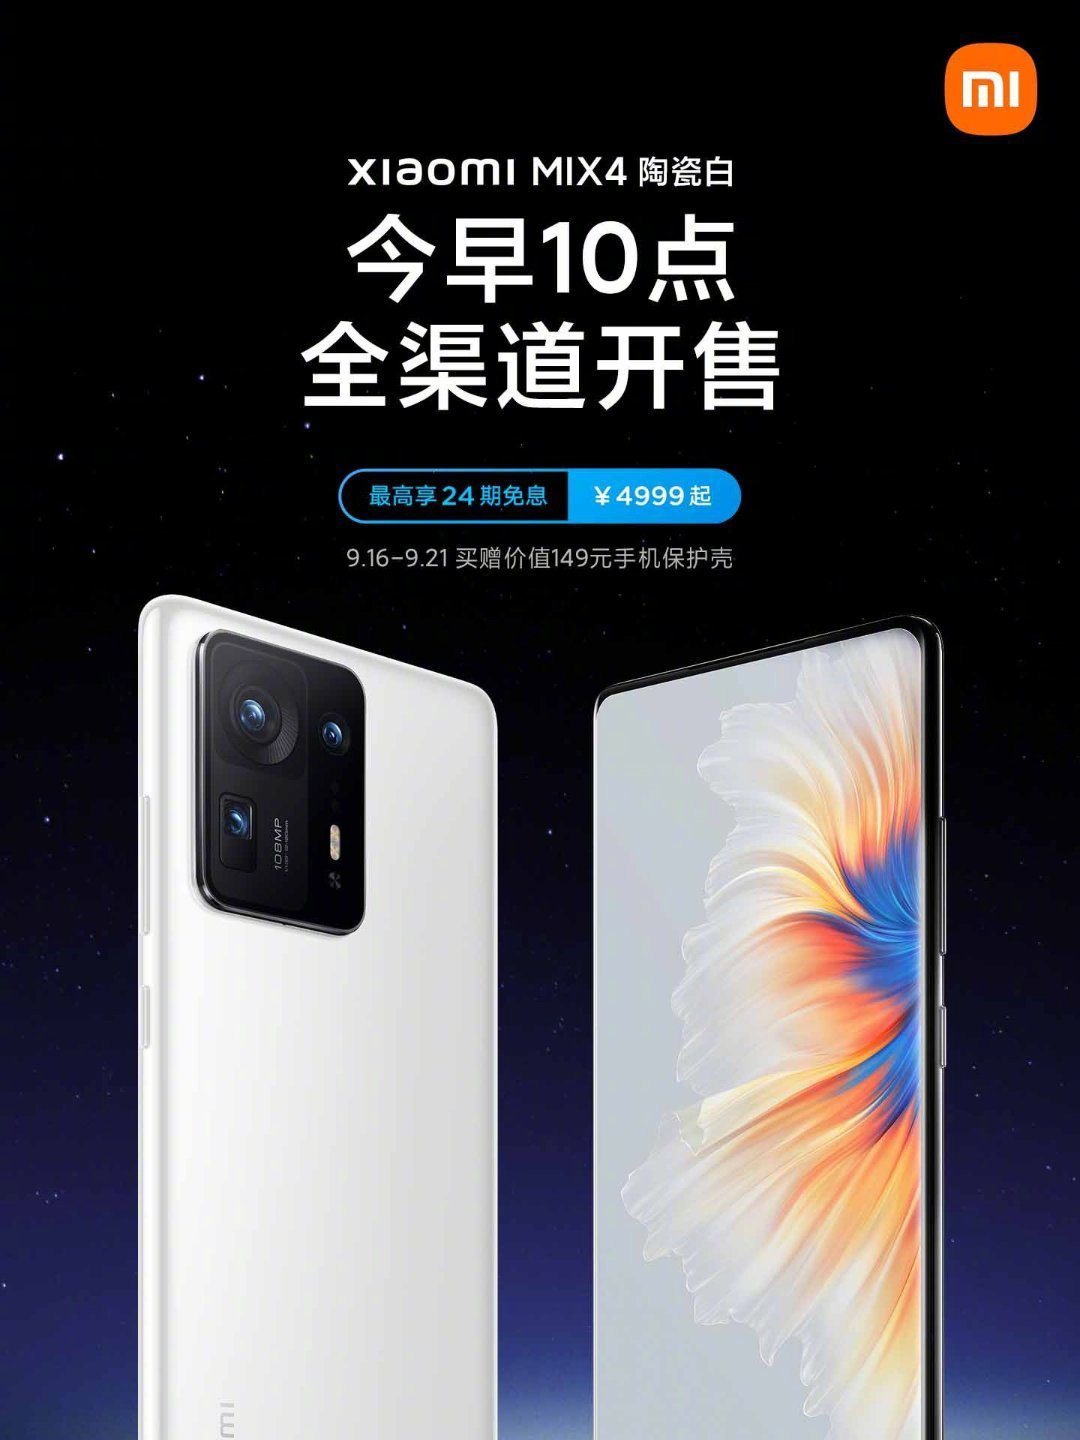 Xiaomi MIX 4 Ceramic White Sale in China